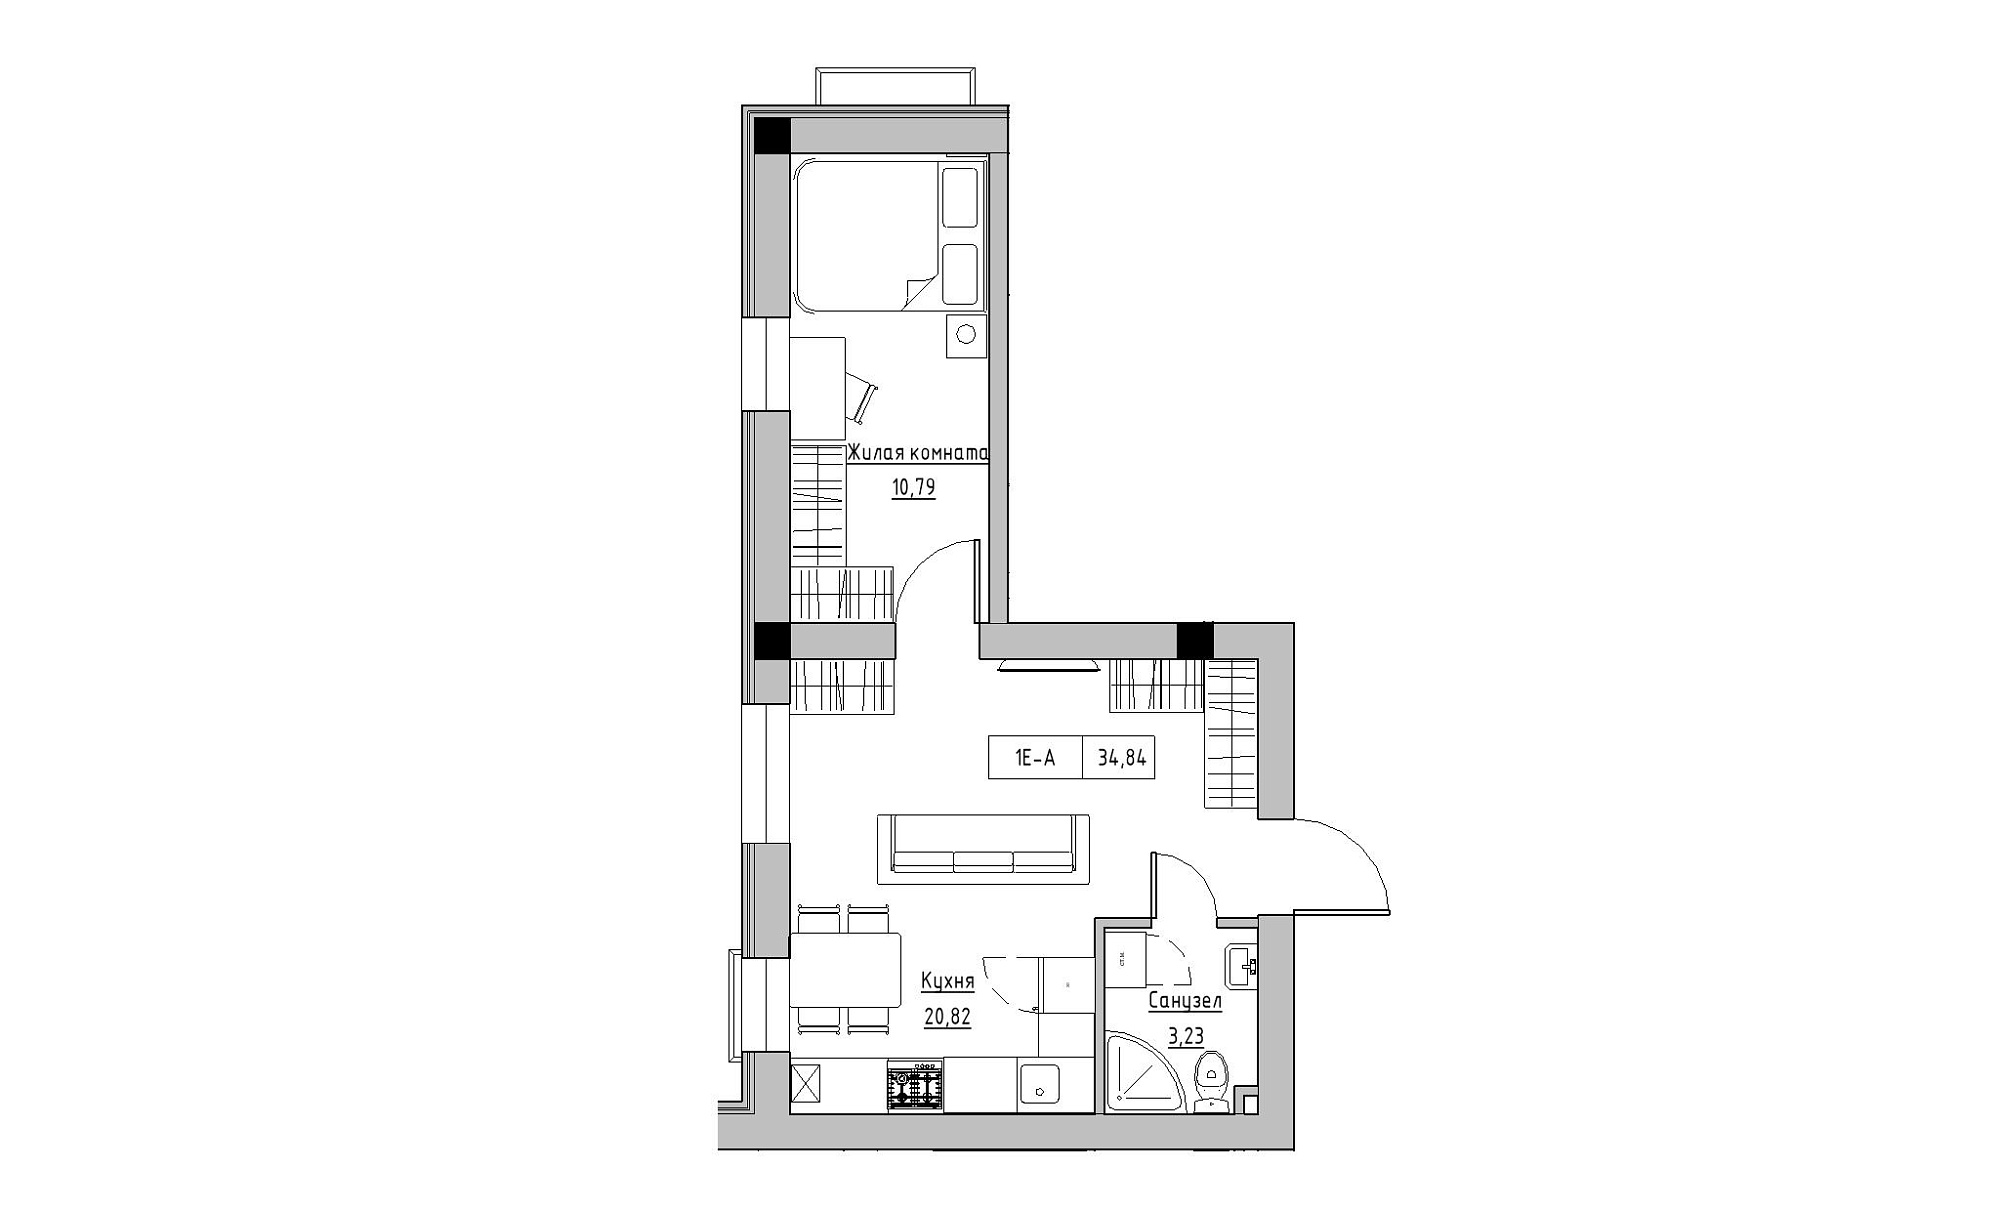 Планування 1-к квартира площею 34.84м2, KS-021-01/0005.